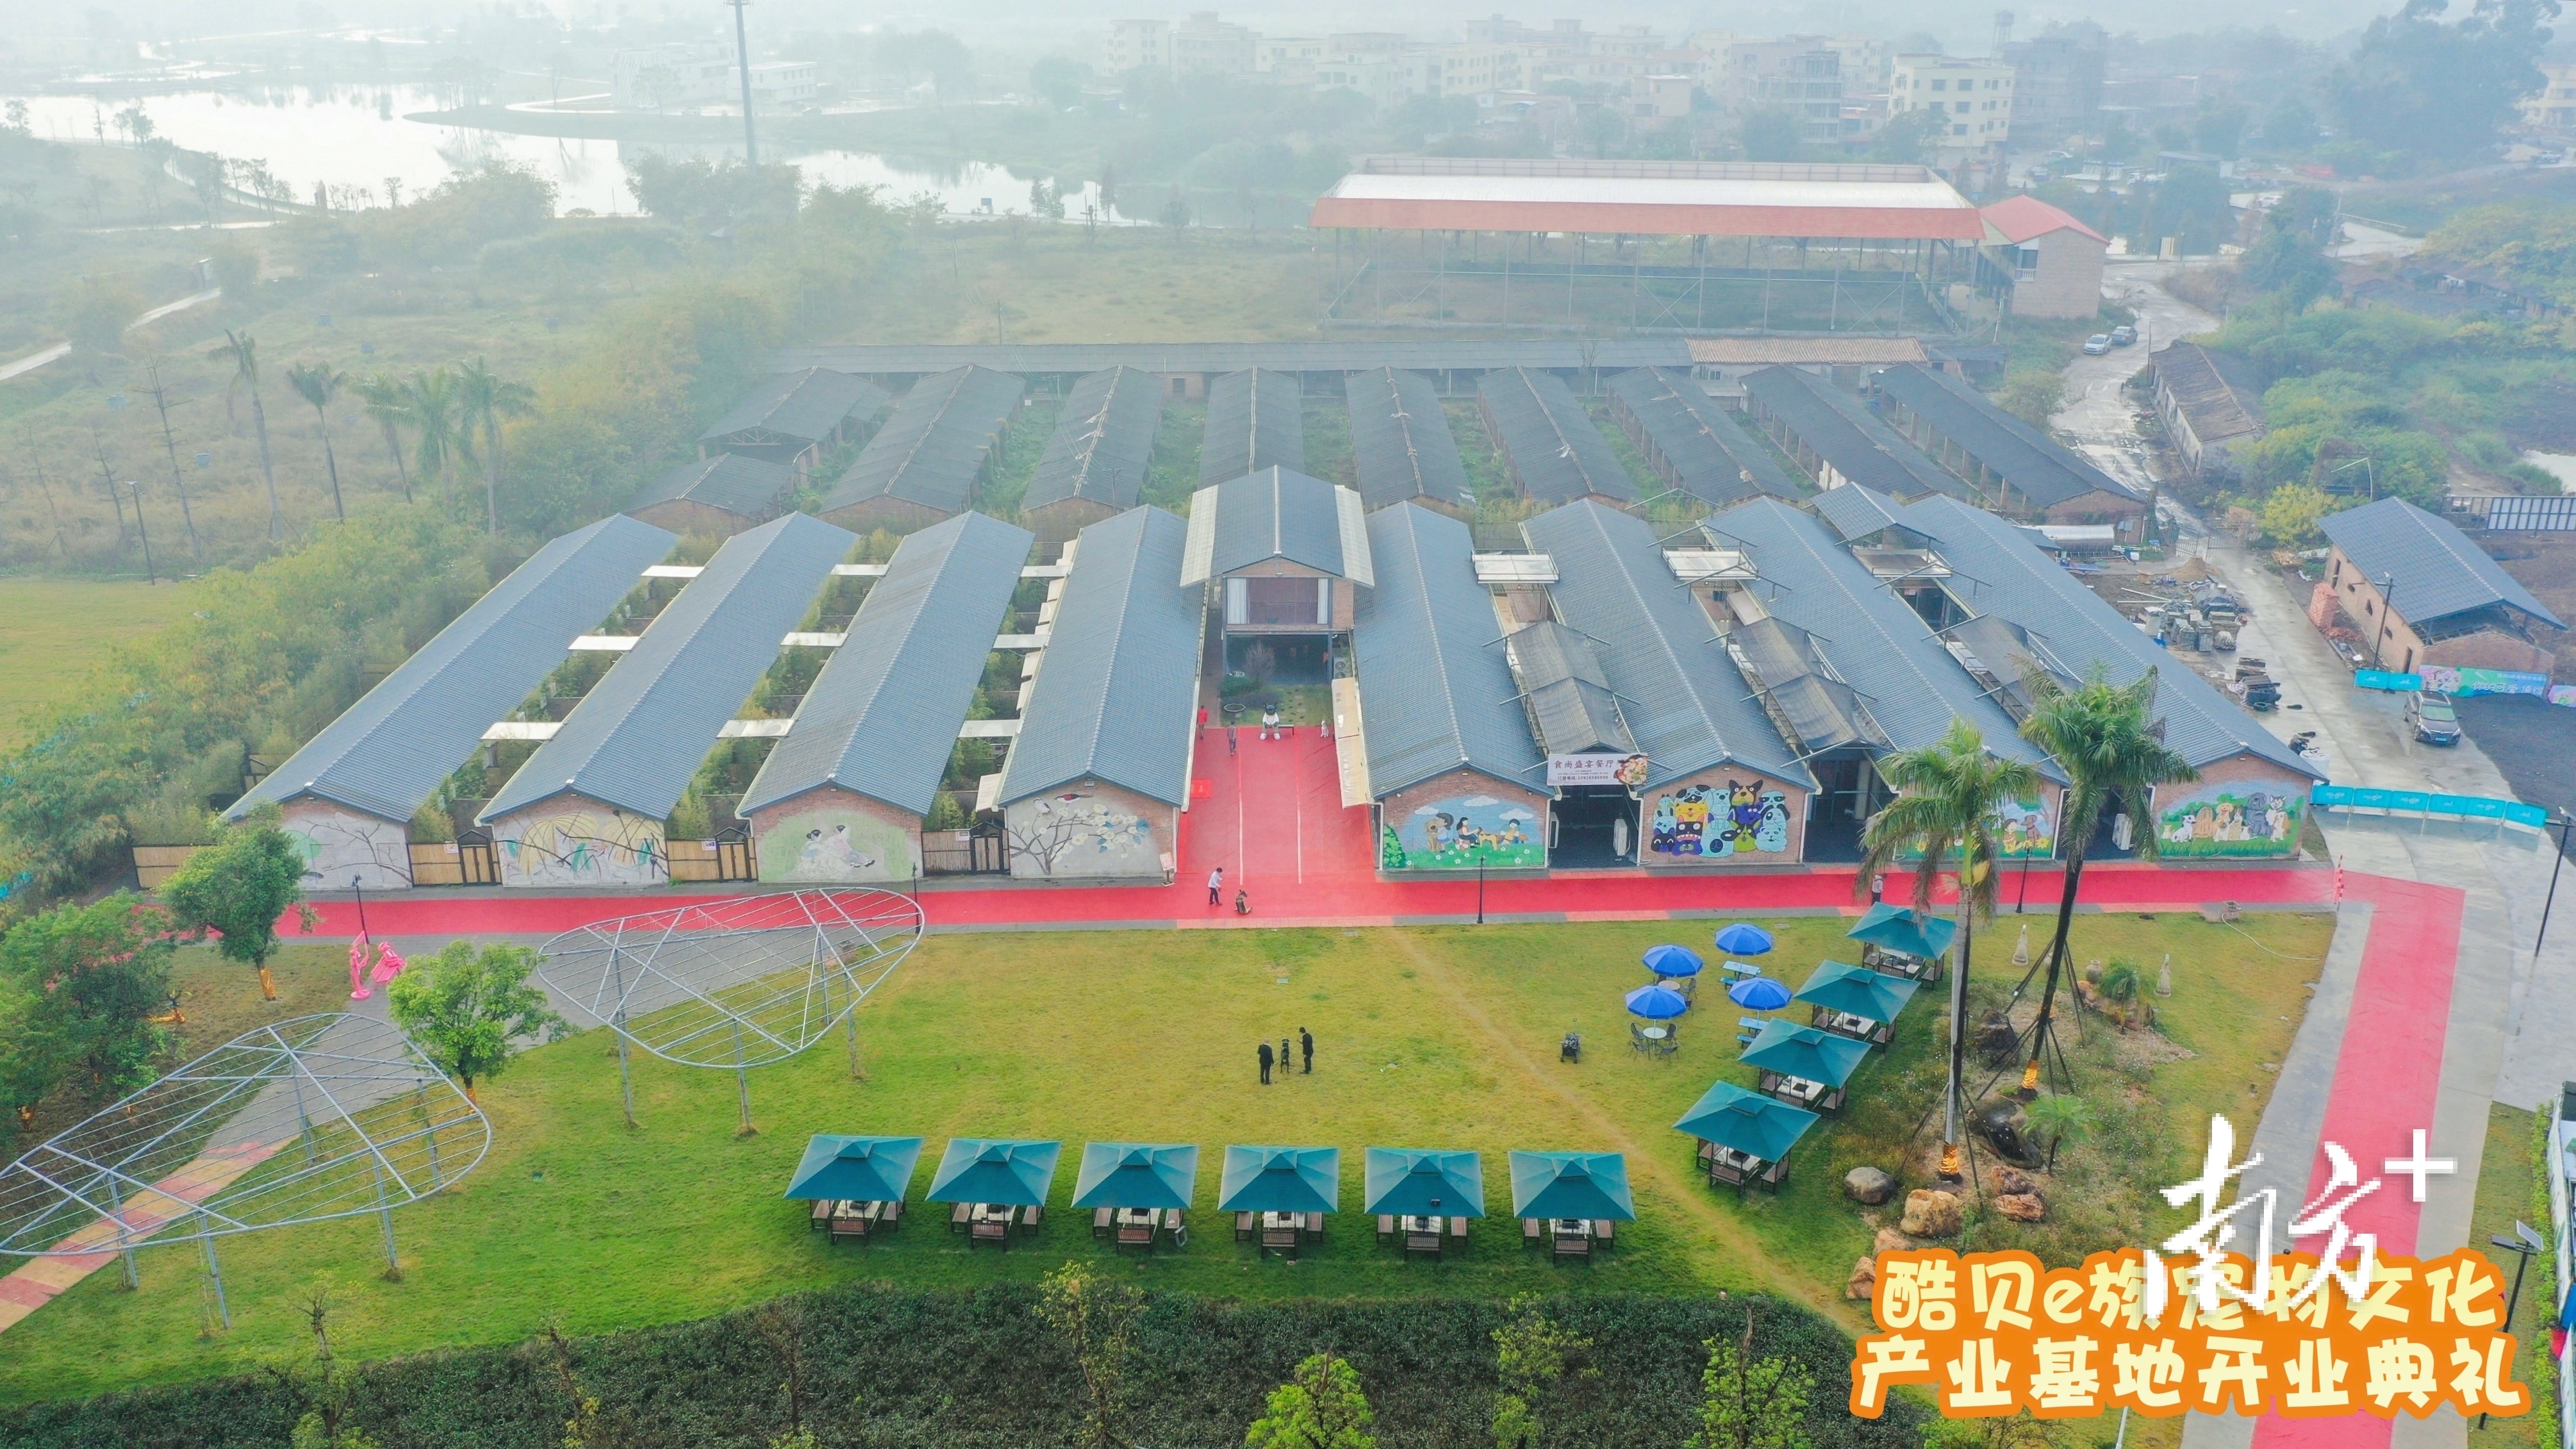 酷贝e族宠物文化产业基地坐落于乐平镇大同湖生态示范区。.jpg